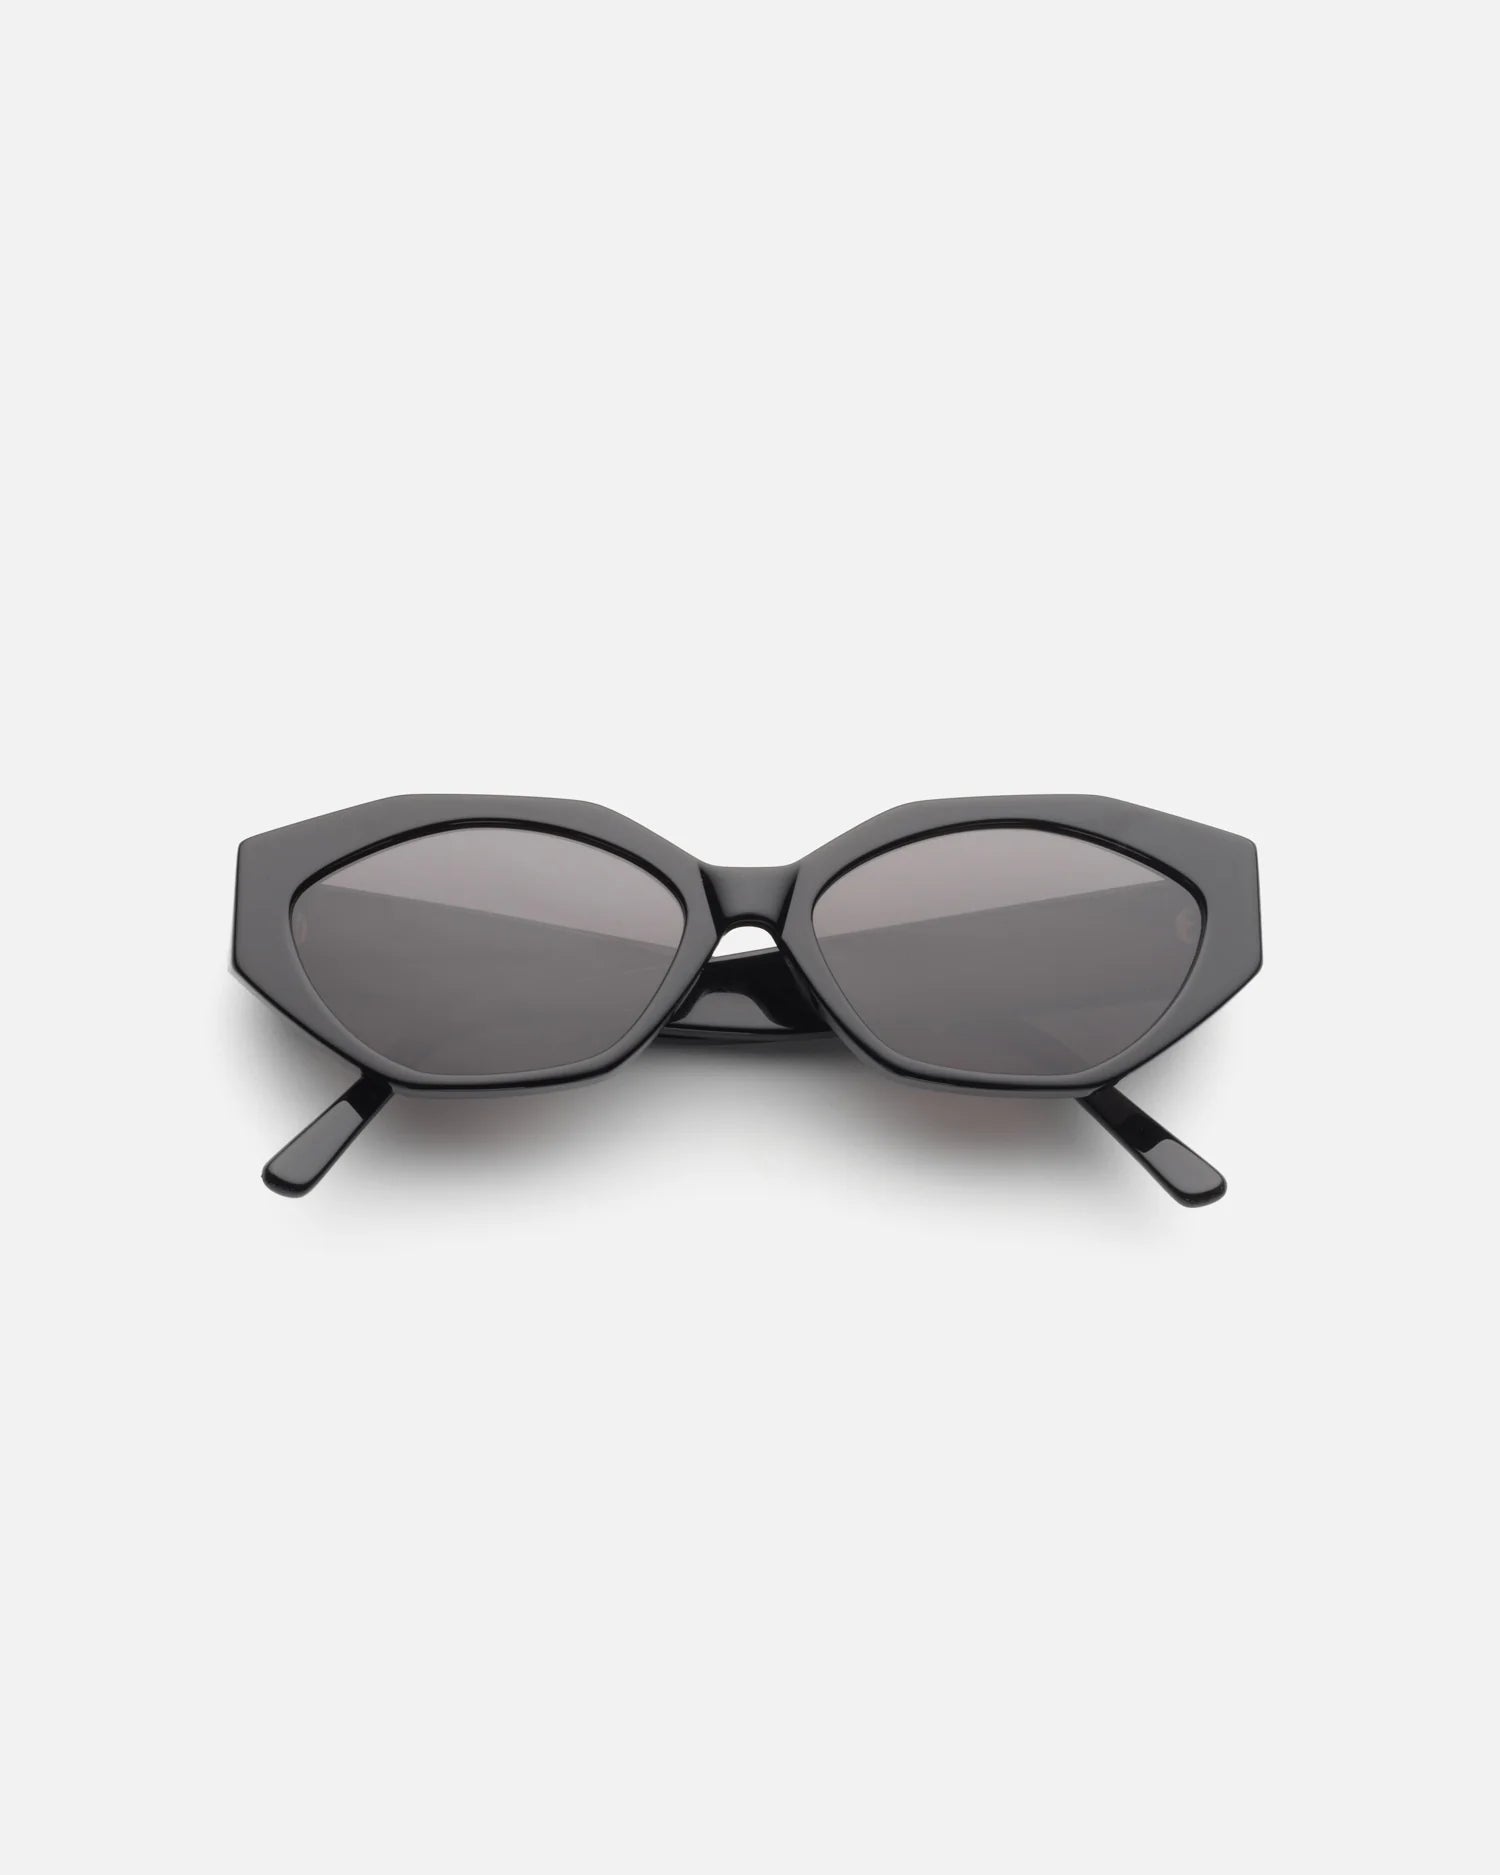 The Elliana Sunglasses in Black